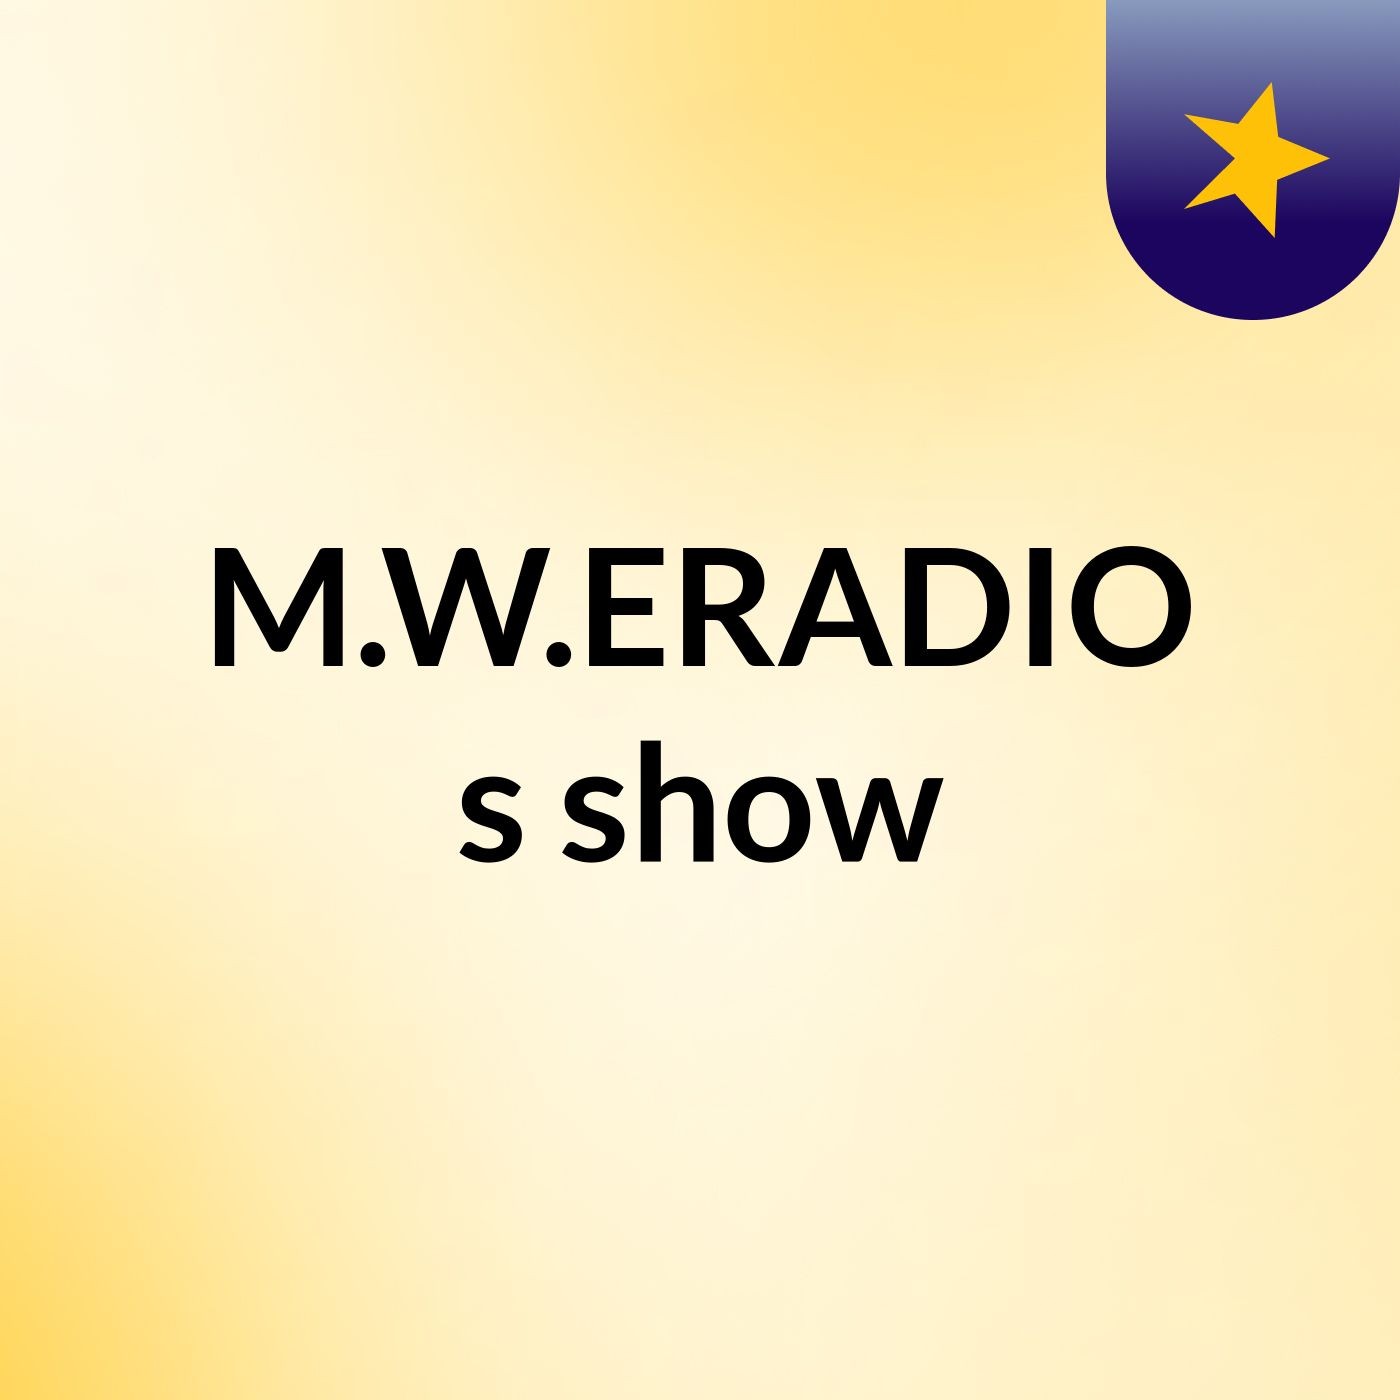 M.W.ERADIO's show